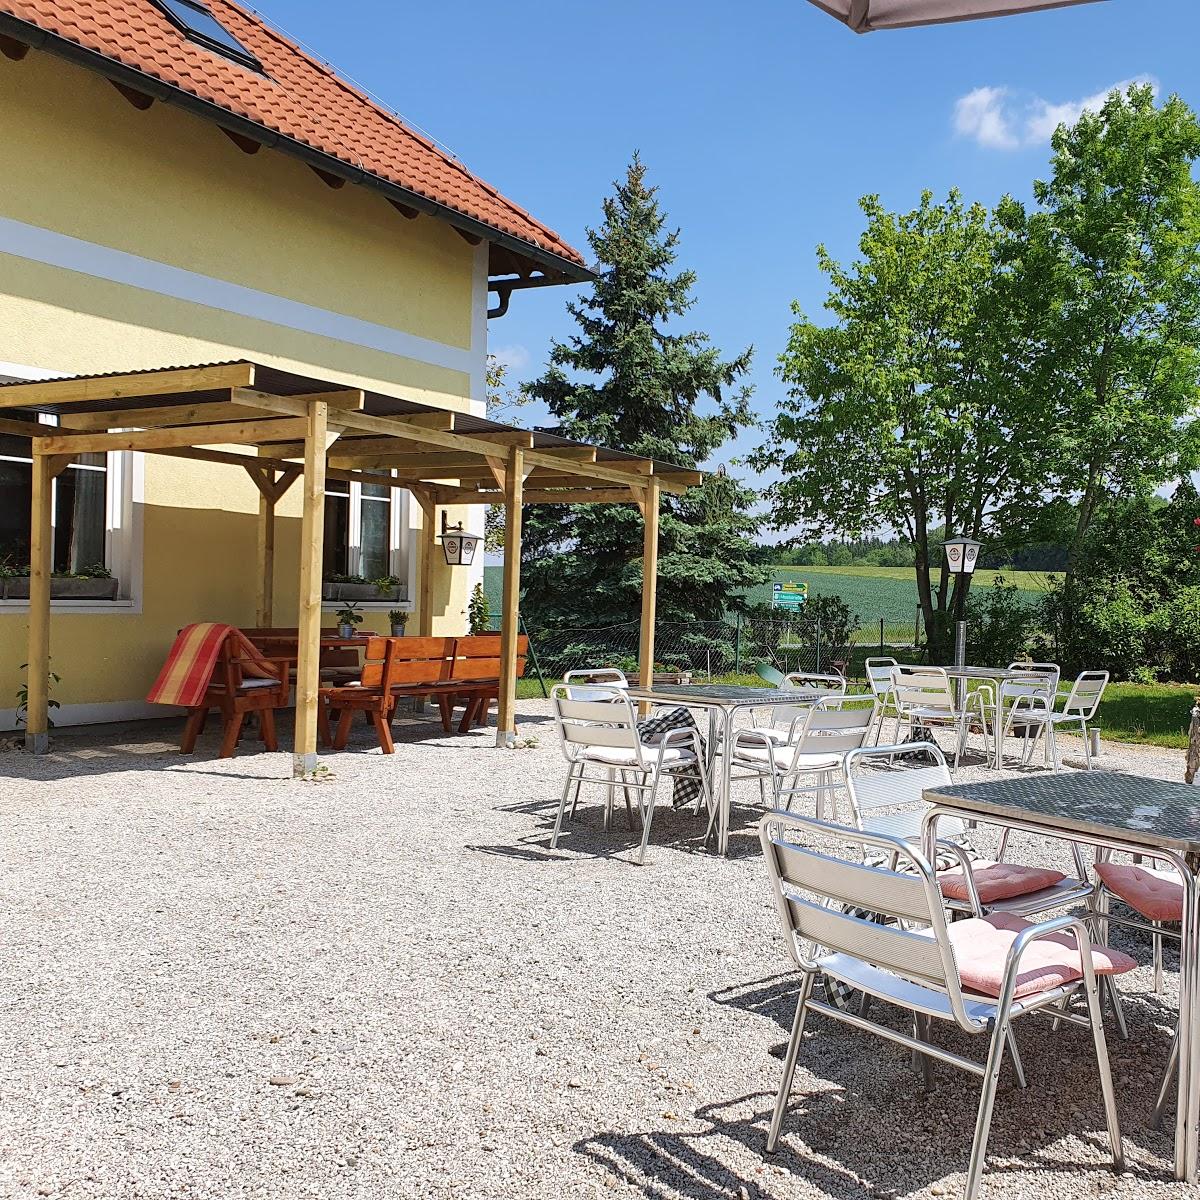 Restaurant "Hader`s Wirtshaus" in Weistrach